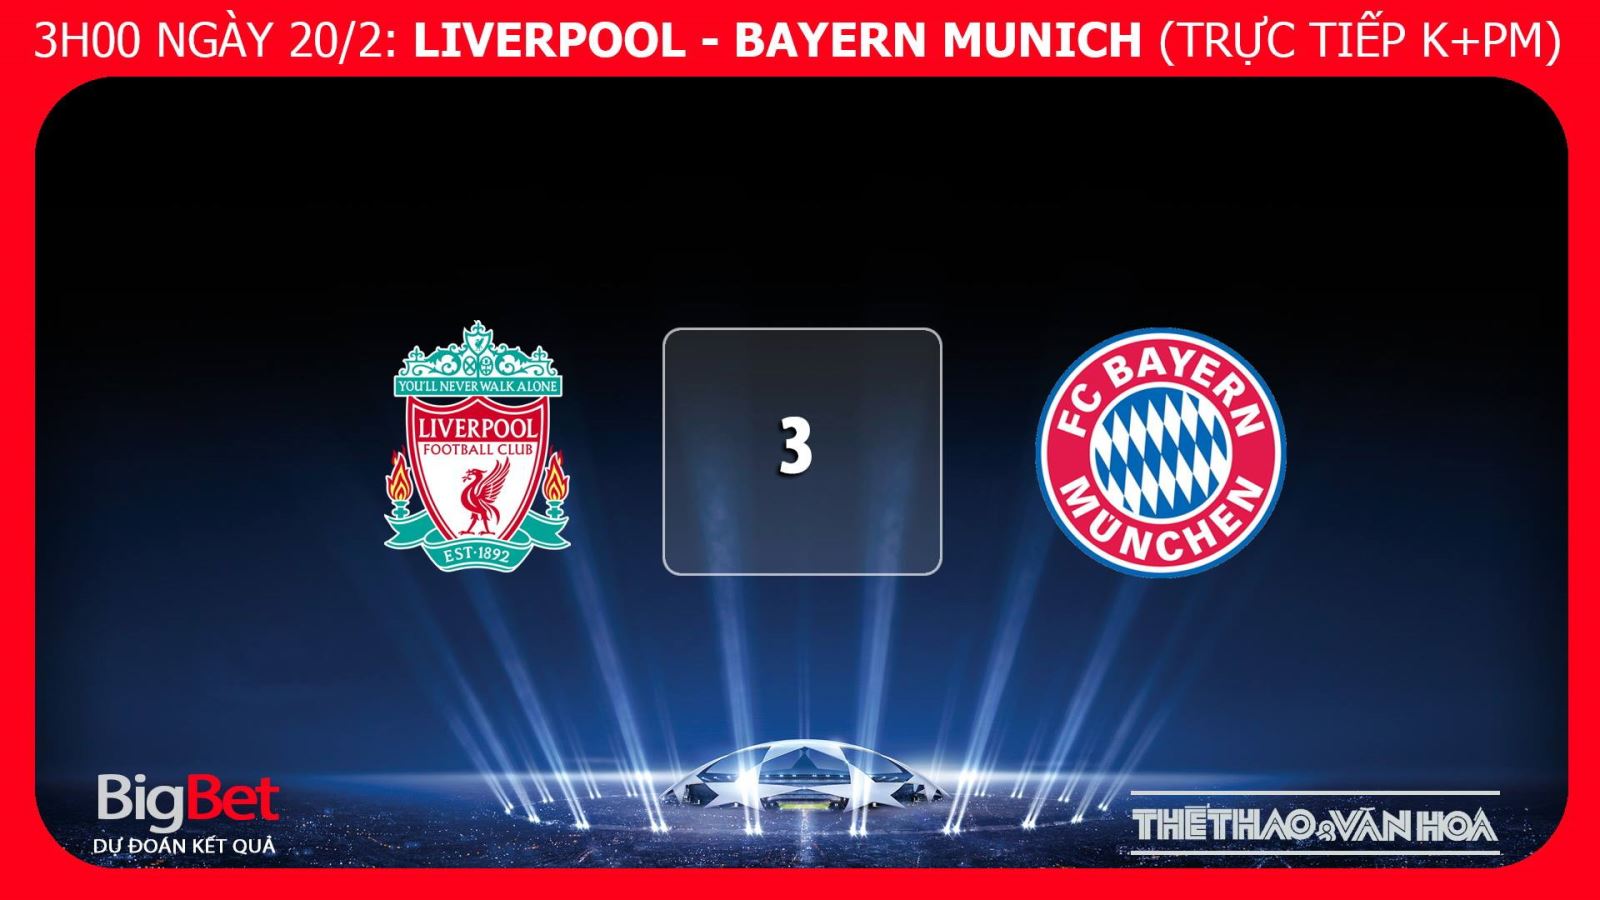 Kèo bóng đá, Nhận định bóng đá Liverpool vs Bayern, kèo Liverpool vs Bayern, kèo Bayern Liverpool, kèo Liverpool, trực tiếp bóng đá, trực tiếp Liverpool vs Bayern, truc tiep Liver